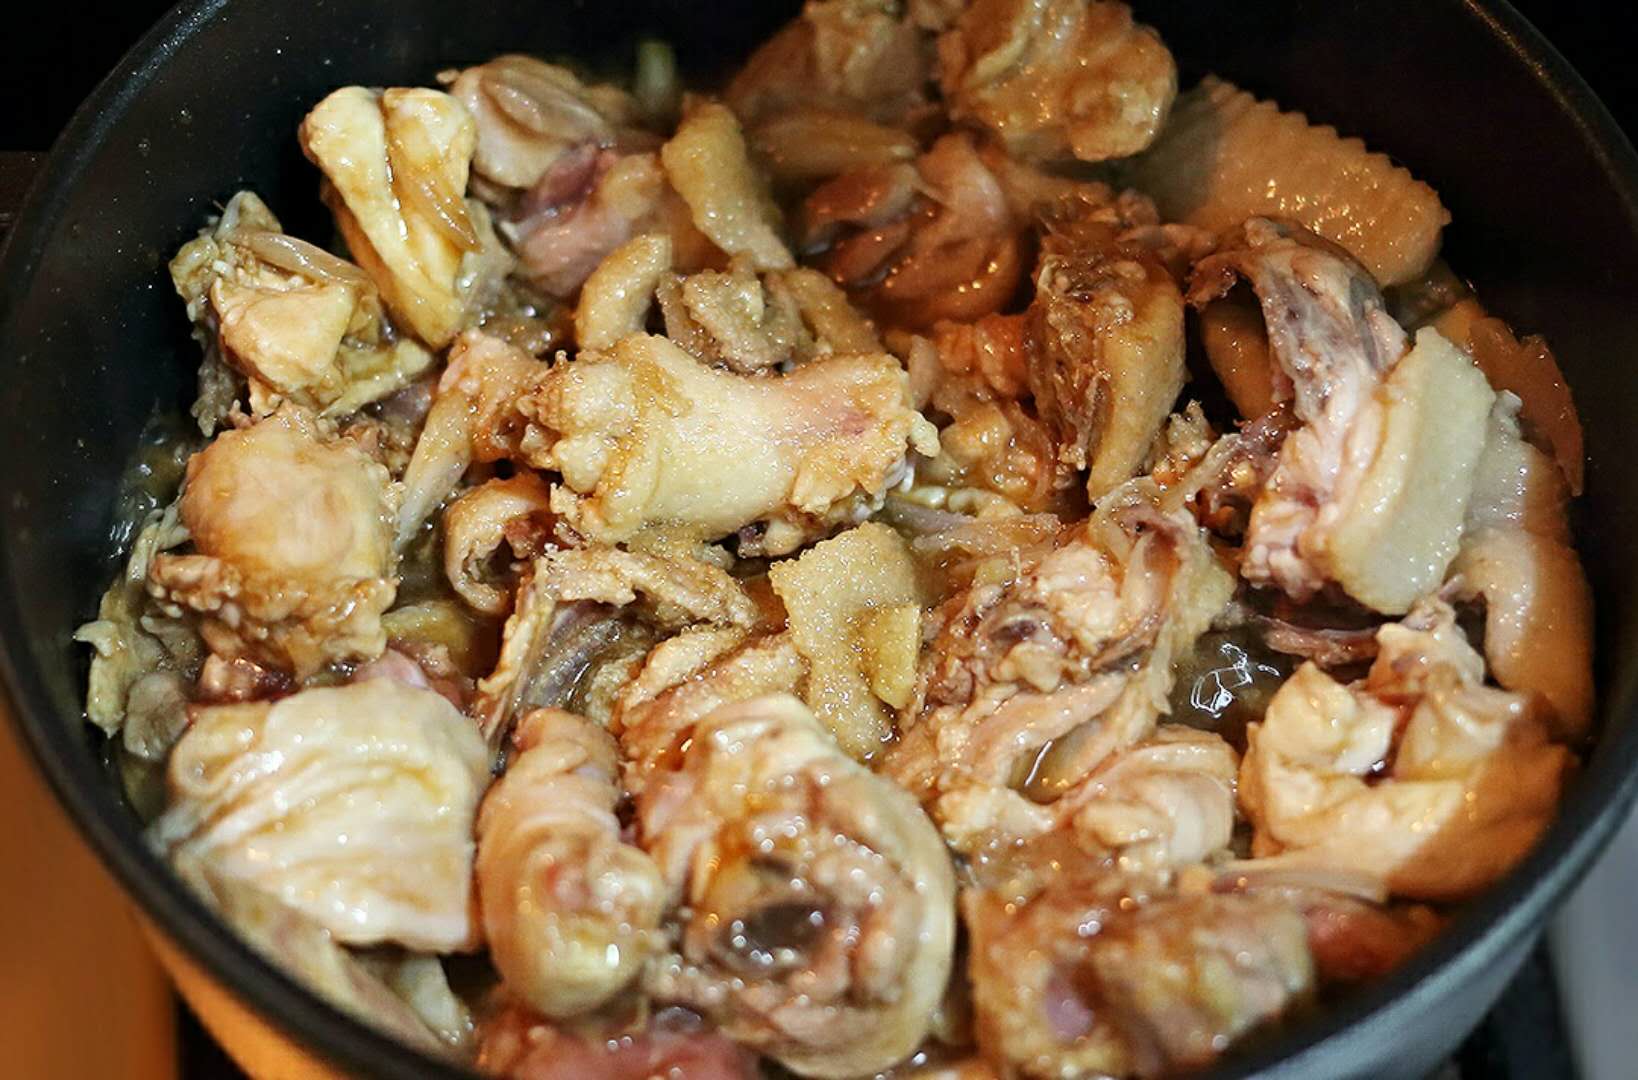 立冬过后沙姜焗鸡,一定要做给家人吃,不吃羊肉也可以进补!